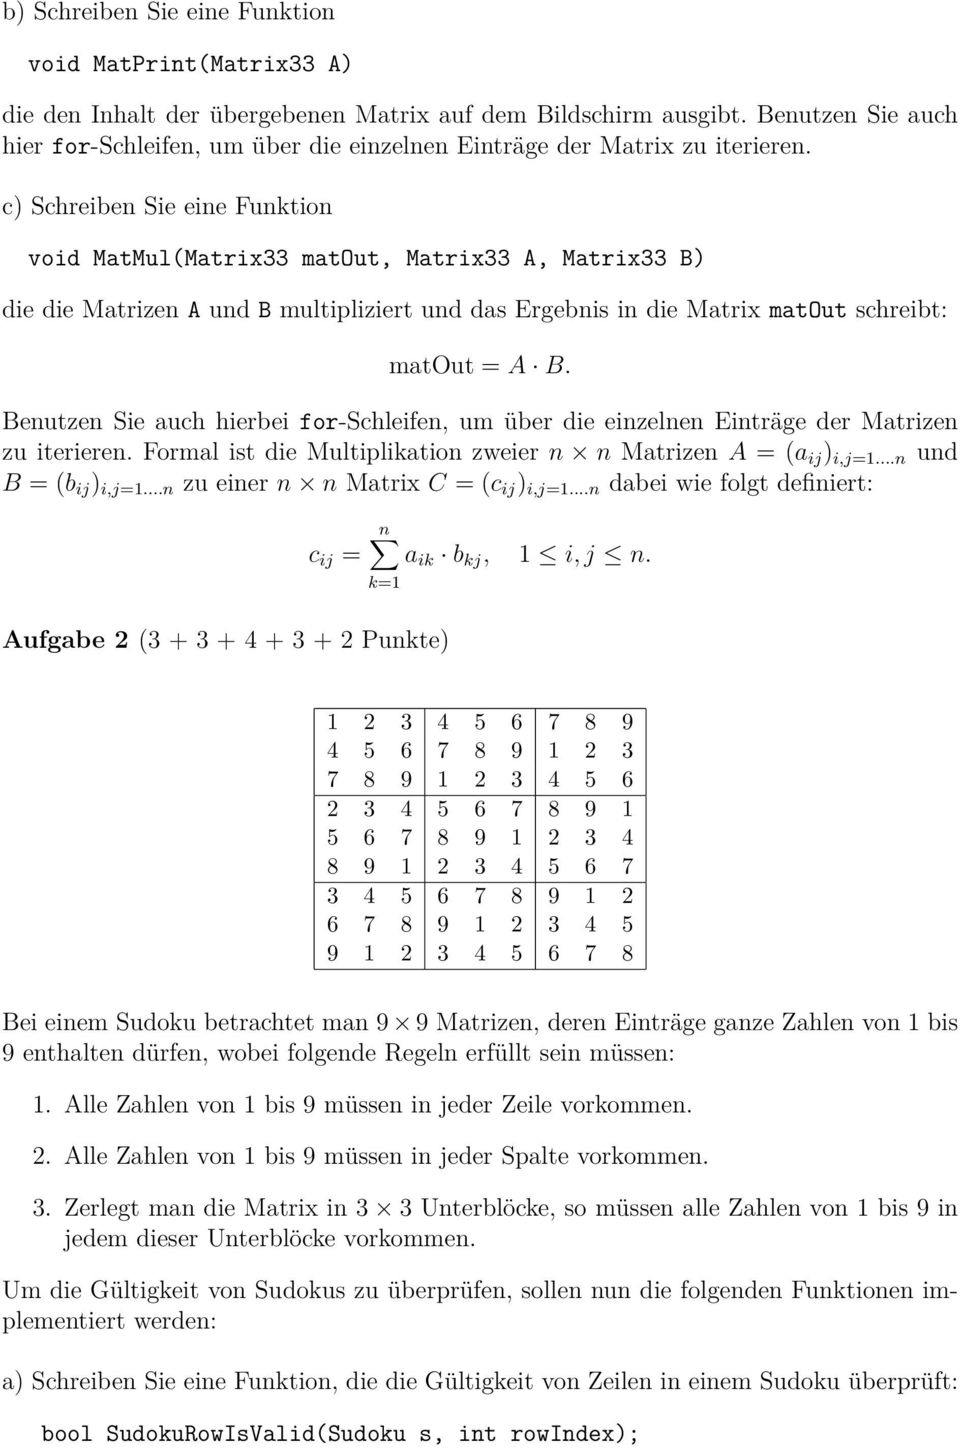 c) Schreiben Sie eine Funktion void MatMul(Matrix33 matout, Matrix33 A, Matrix33 B) die die Matrizen A und B multipliziert und das Ergebnis in die Matrix matout schreibt: matout = A B.